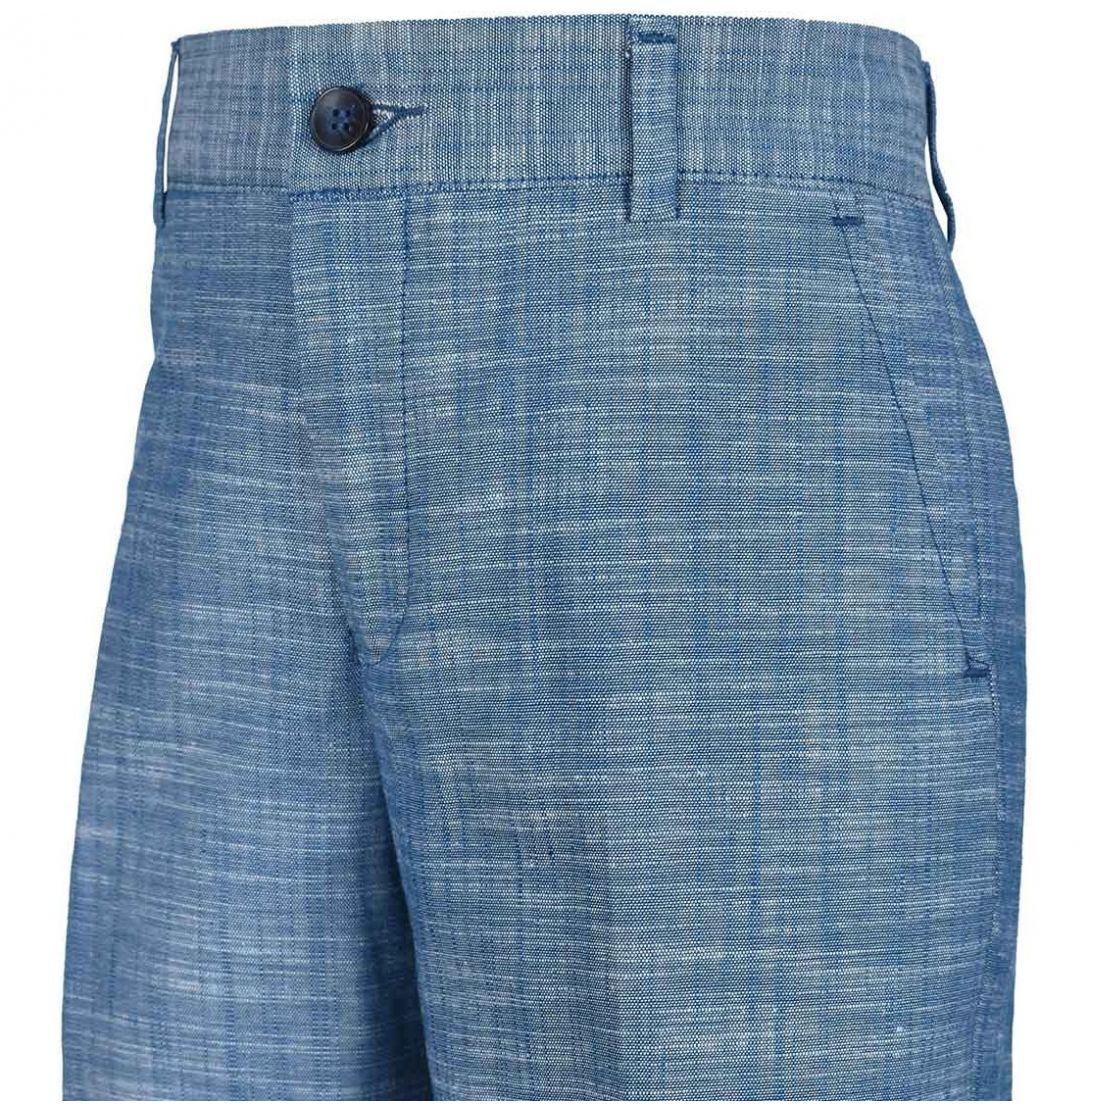 Pantalón jaspe azul oscar collection para niño  - Sears